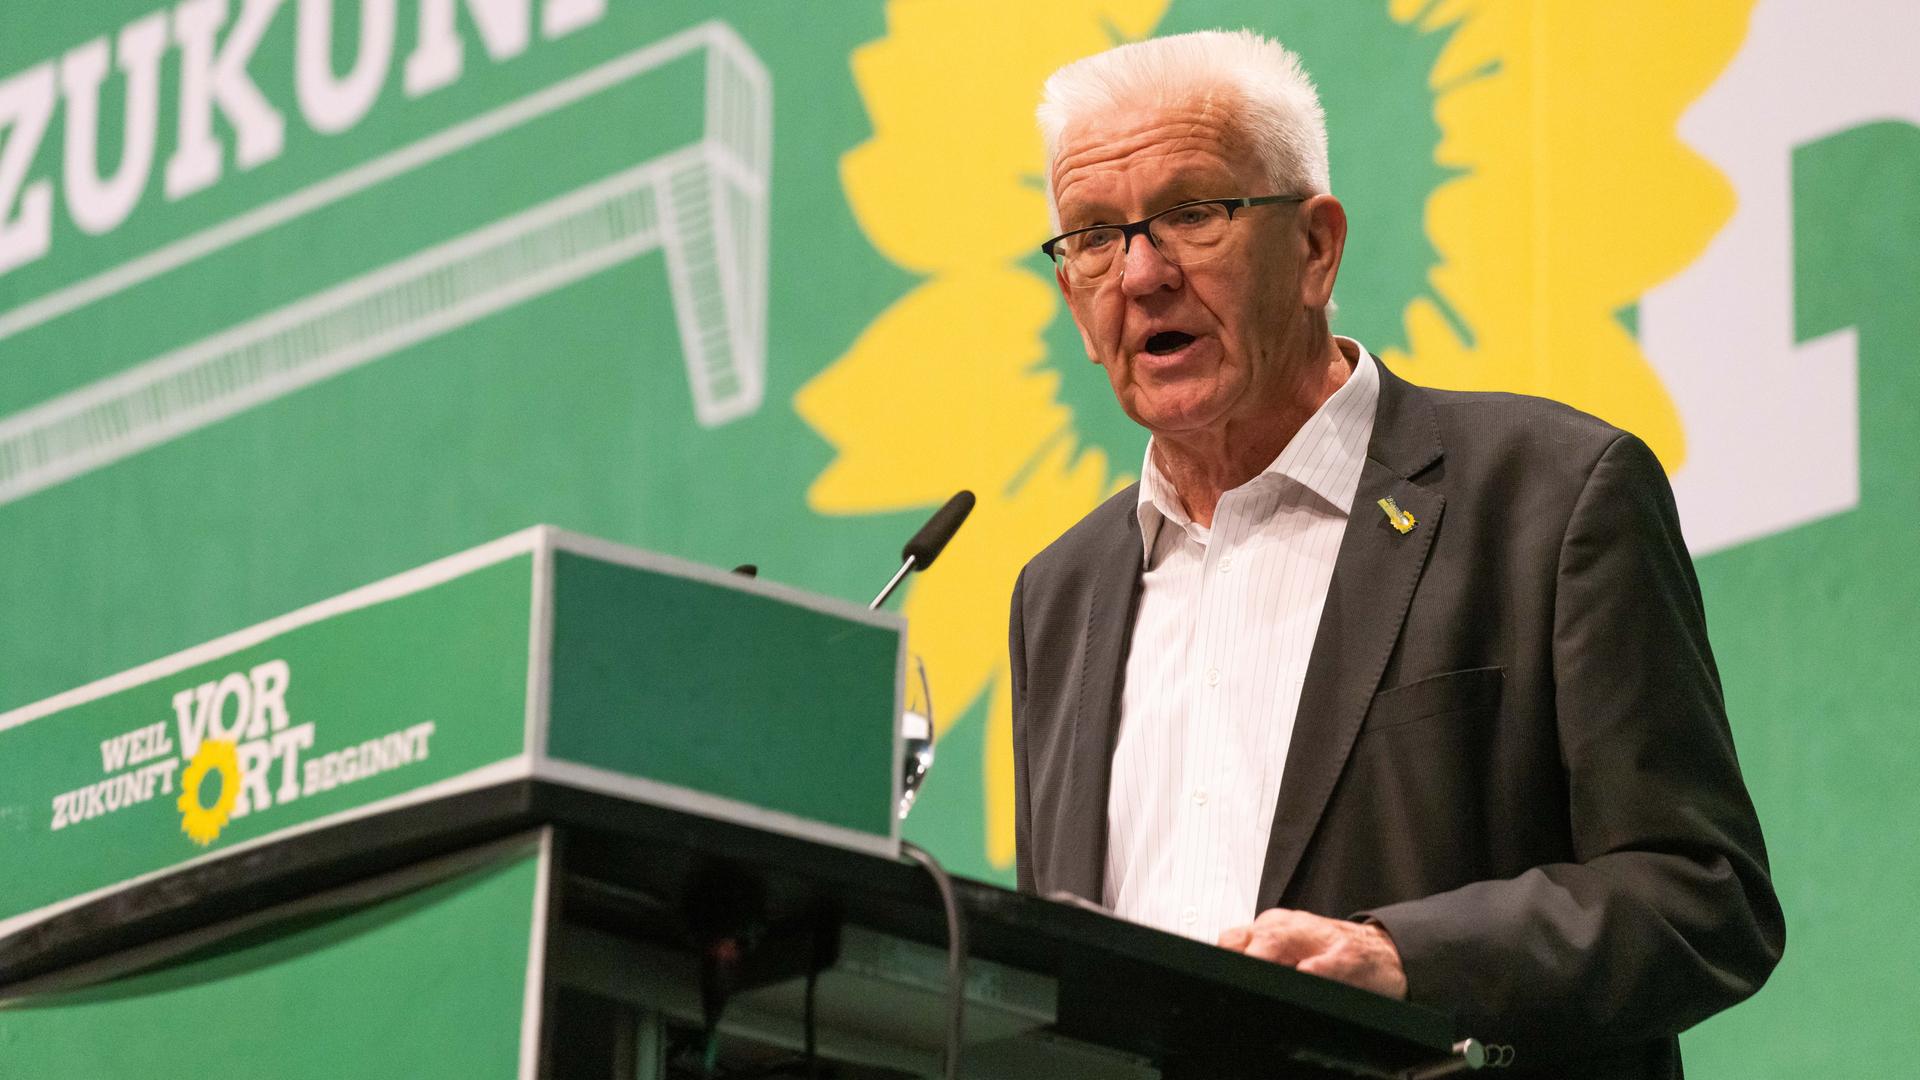 Baden-Württembergs Ministerpräsident Kretschmann steht während dem Landesparteitag der Grünen auf der Bühne und spricht.